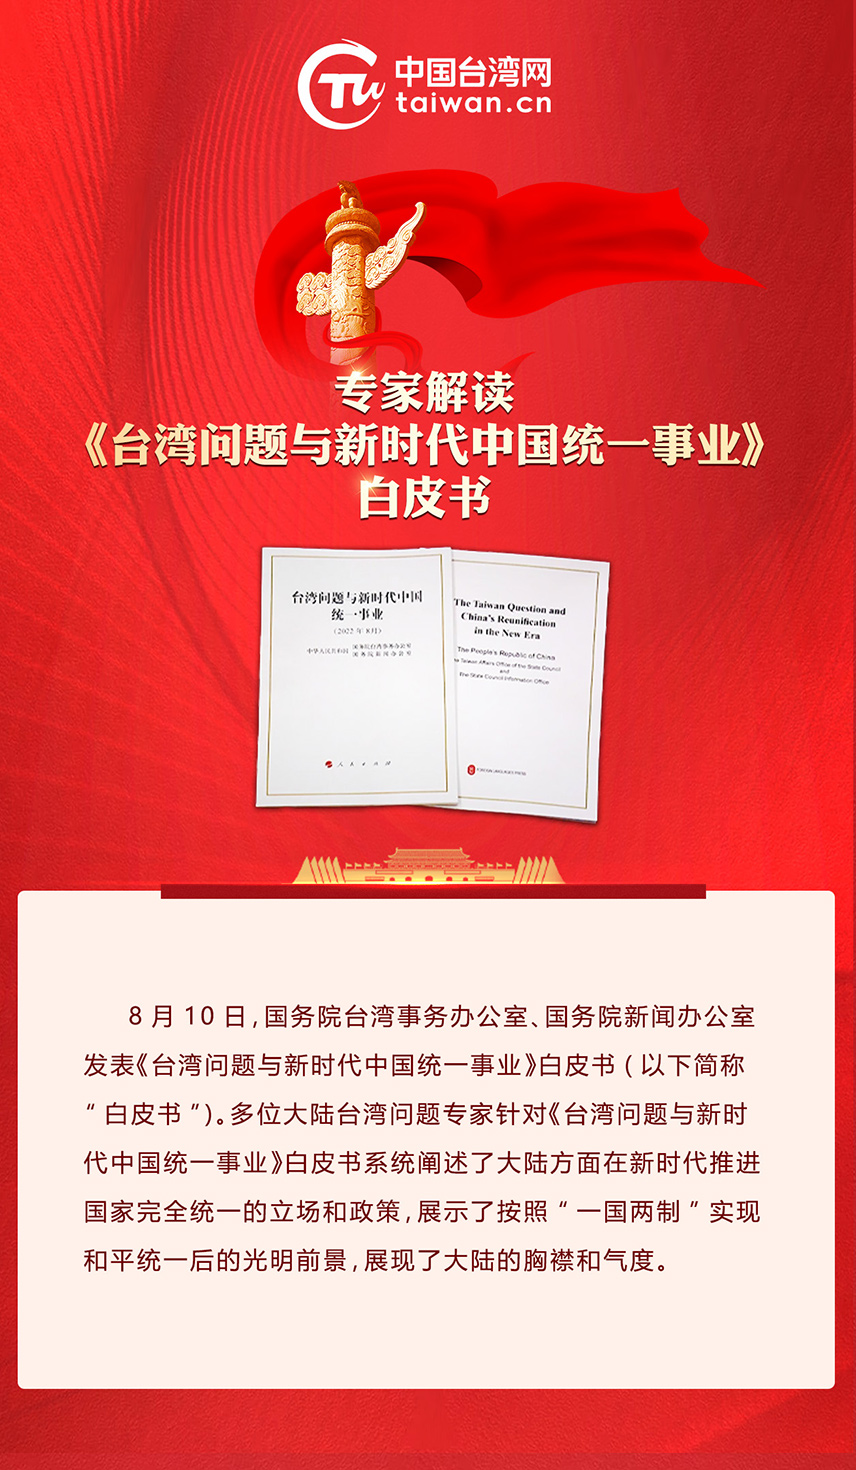 专家解读《台湾问题与新时代中国统一事业》白皮书